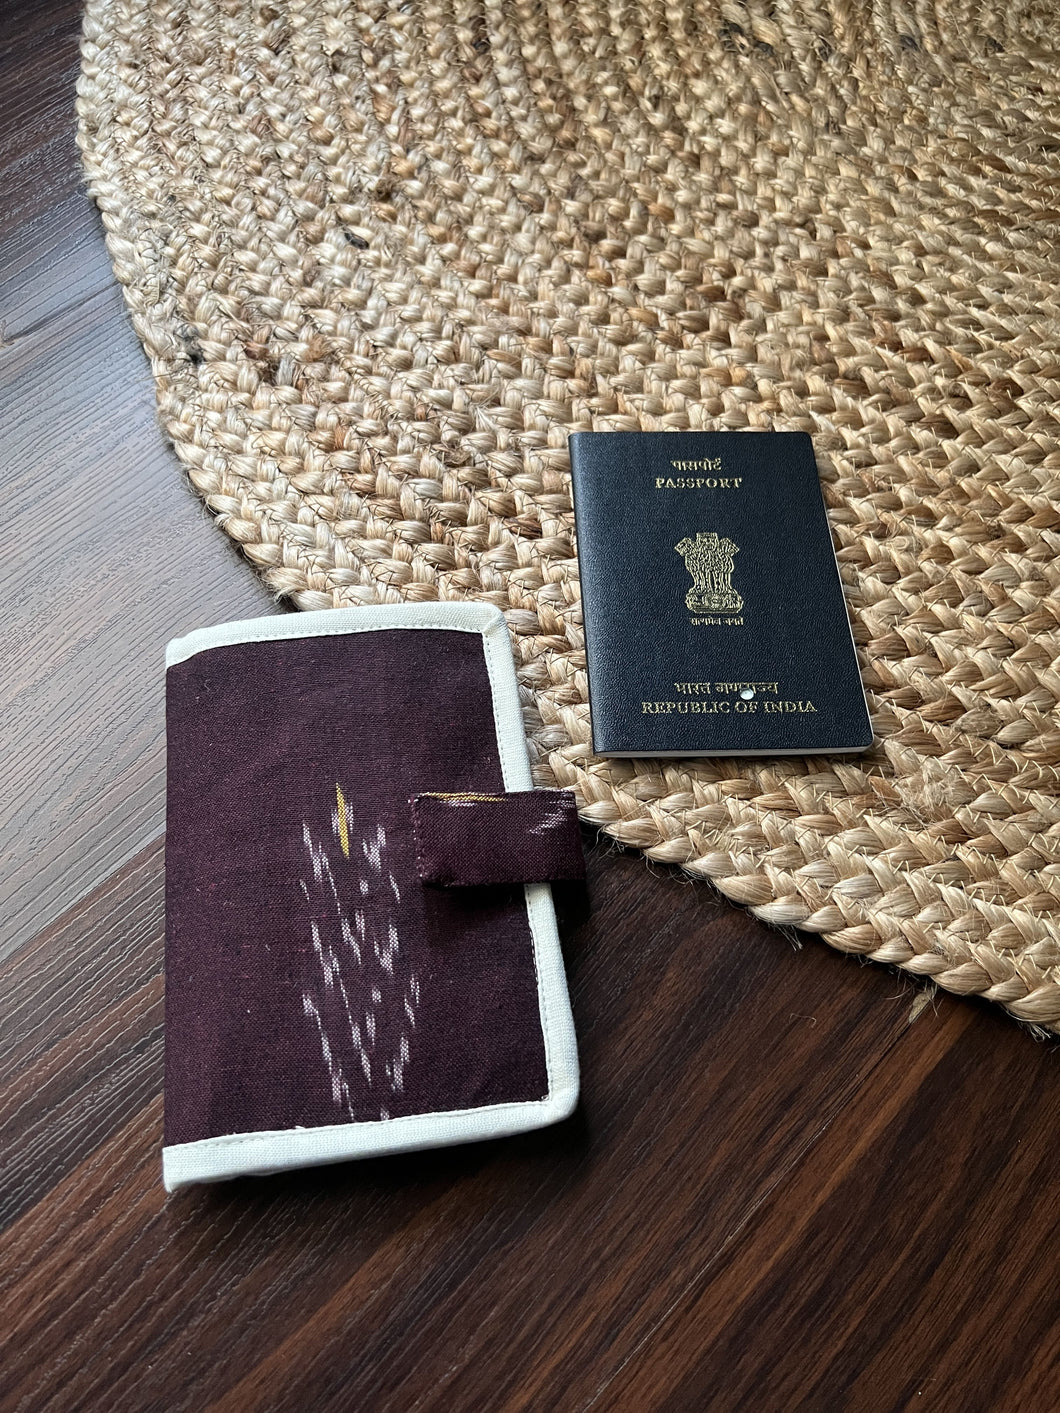 Sooti Passport Wallet For 1 Passport – Ikat Maroon